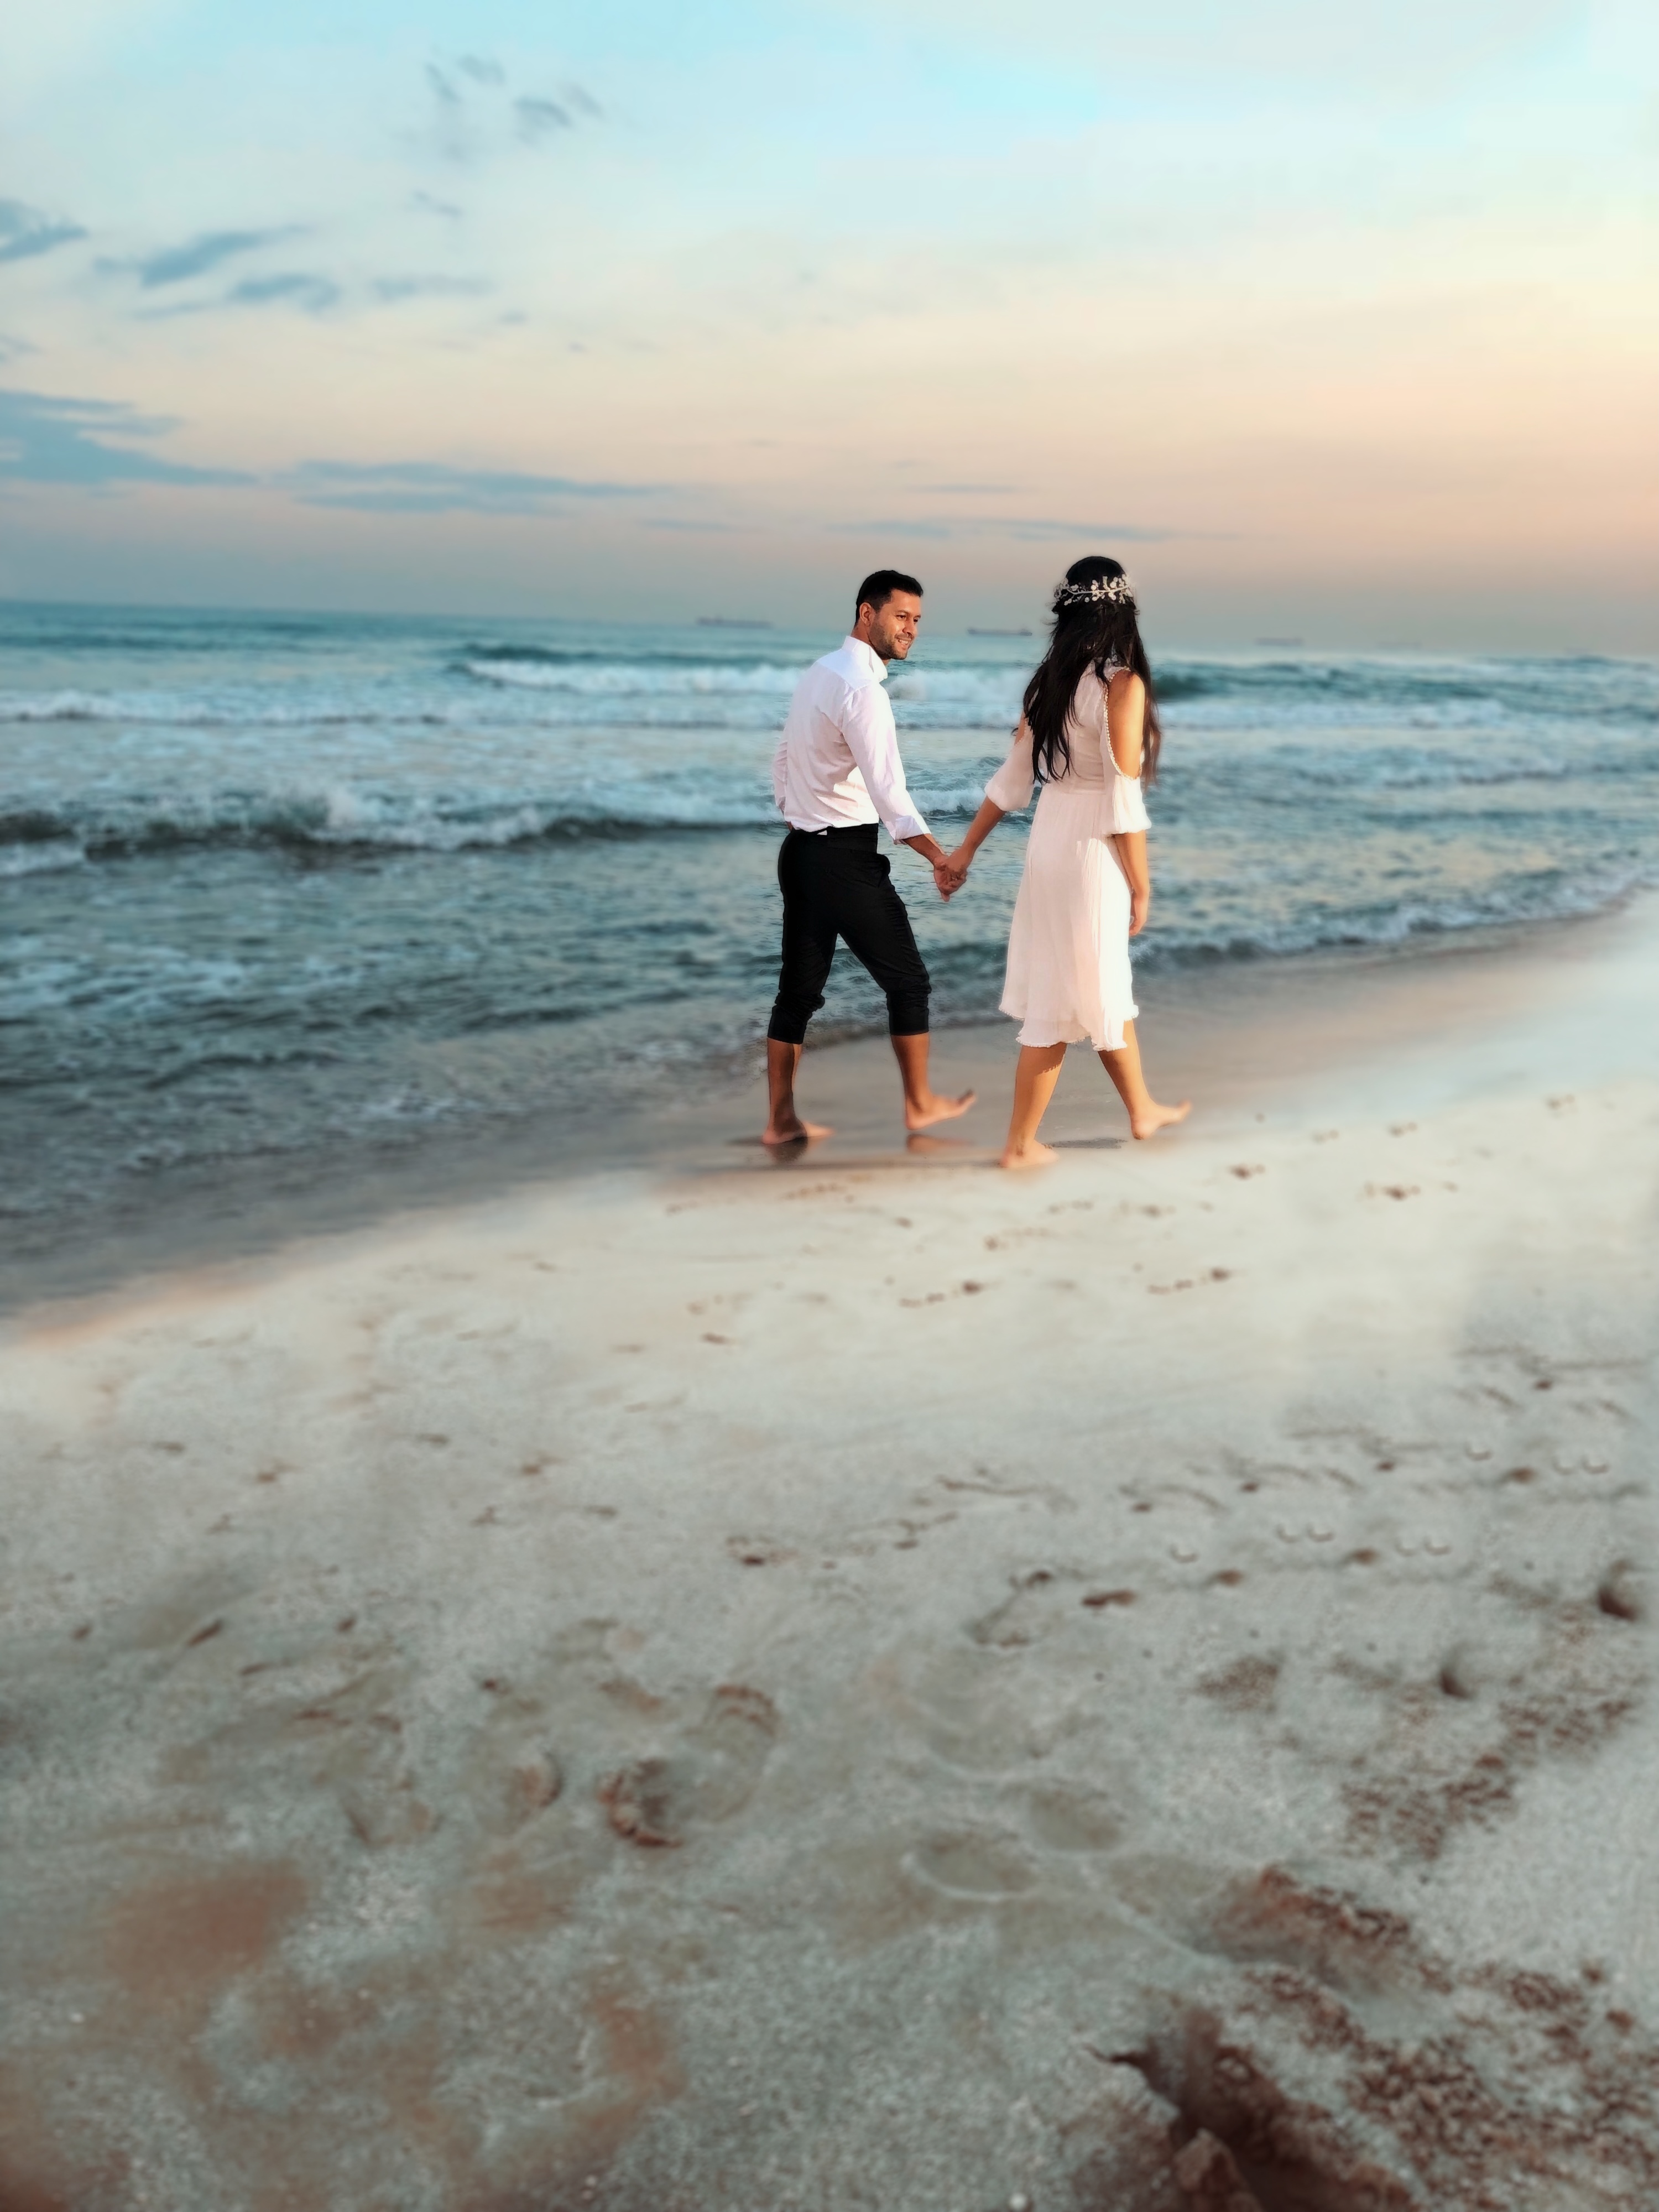 Günbatimi,kumsal,sahil düğün fotoğraf çekimi ve düğün hikayesi kisa film için bizden mutlaka fiyat teklifi aliniz